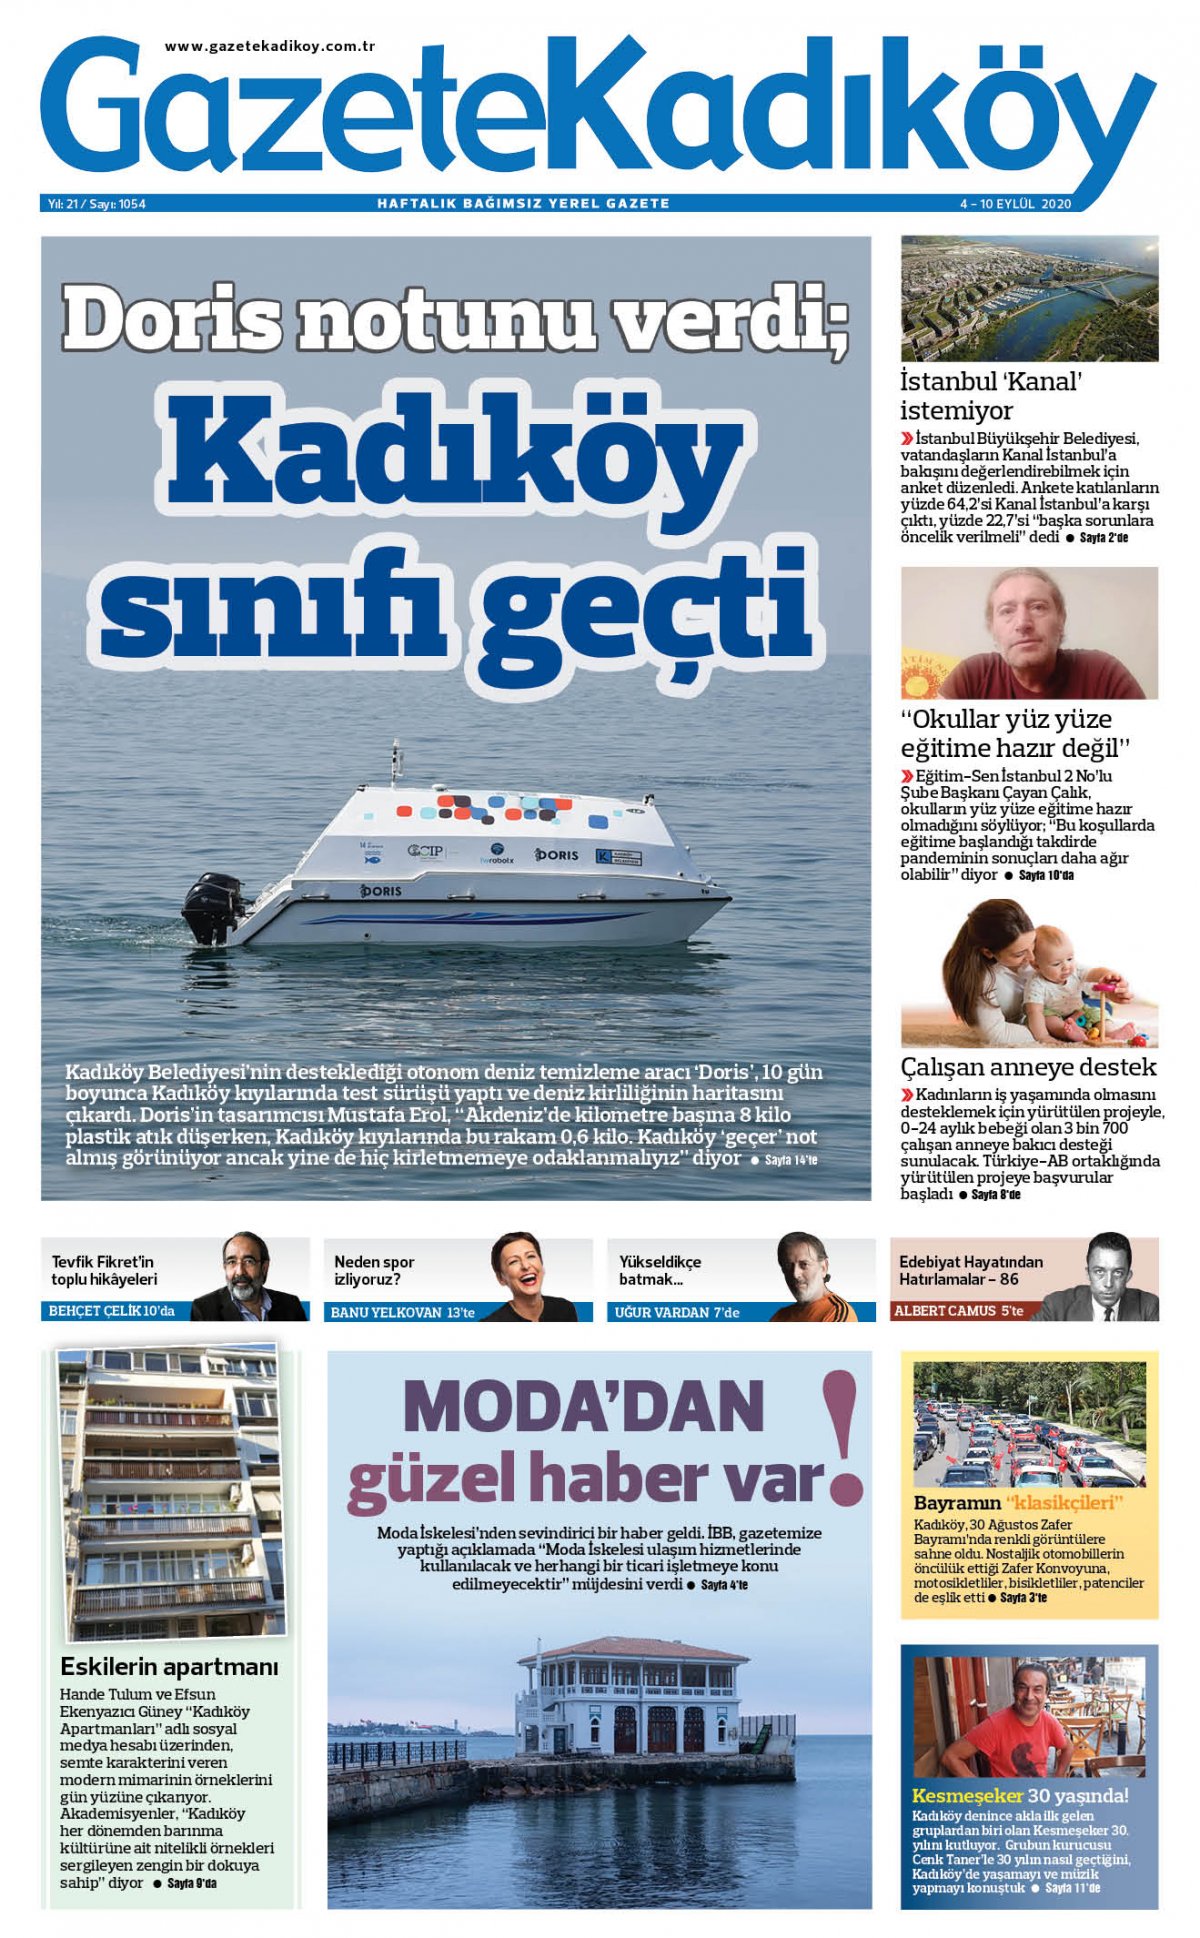 Gazete Kadıköy - 1054. Sayı